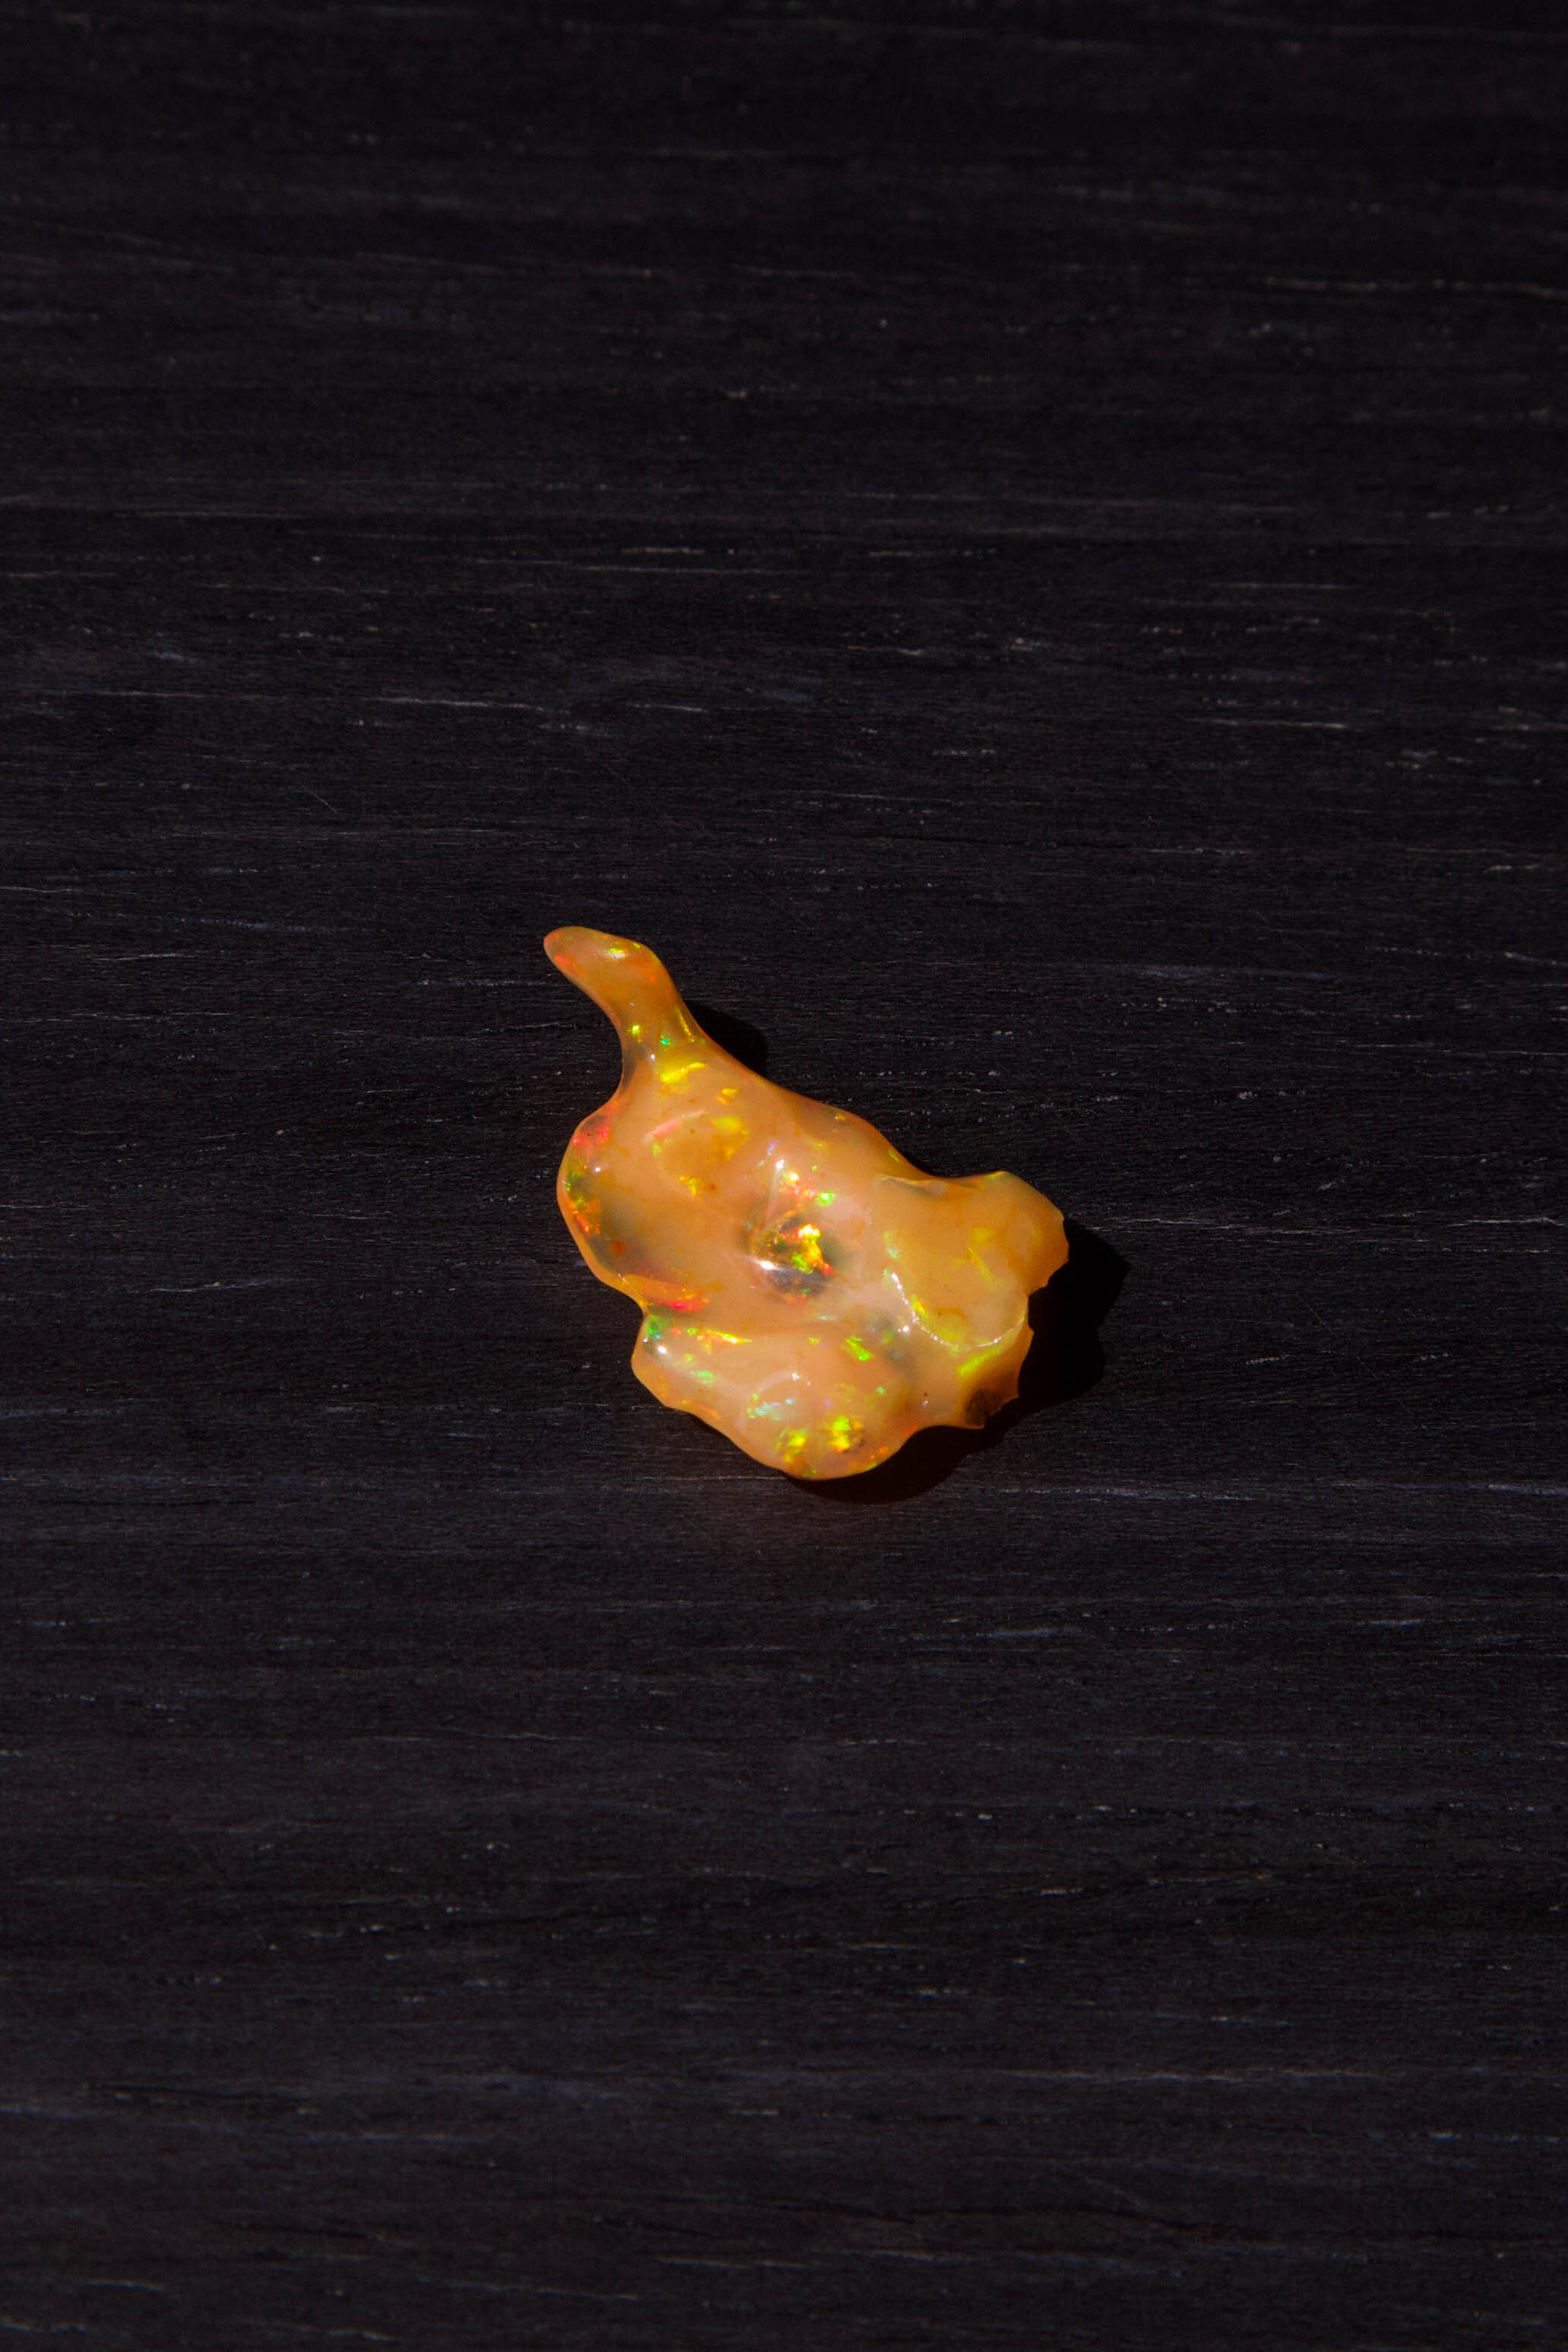 Orange Mexican Fire Opal with play-of-color  we found in La Trinidad, Queretaro